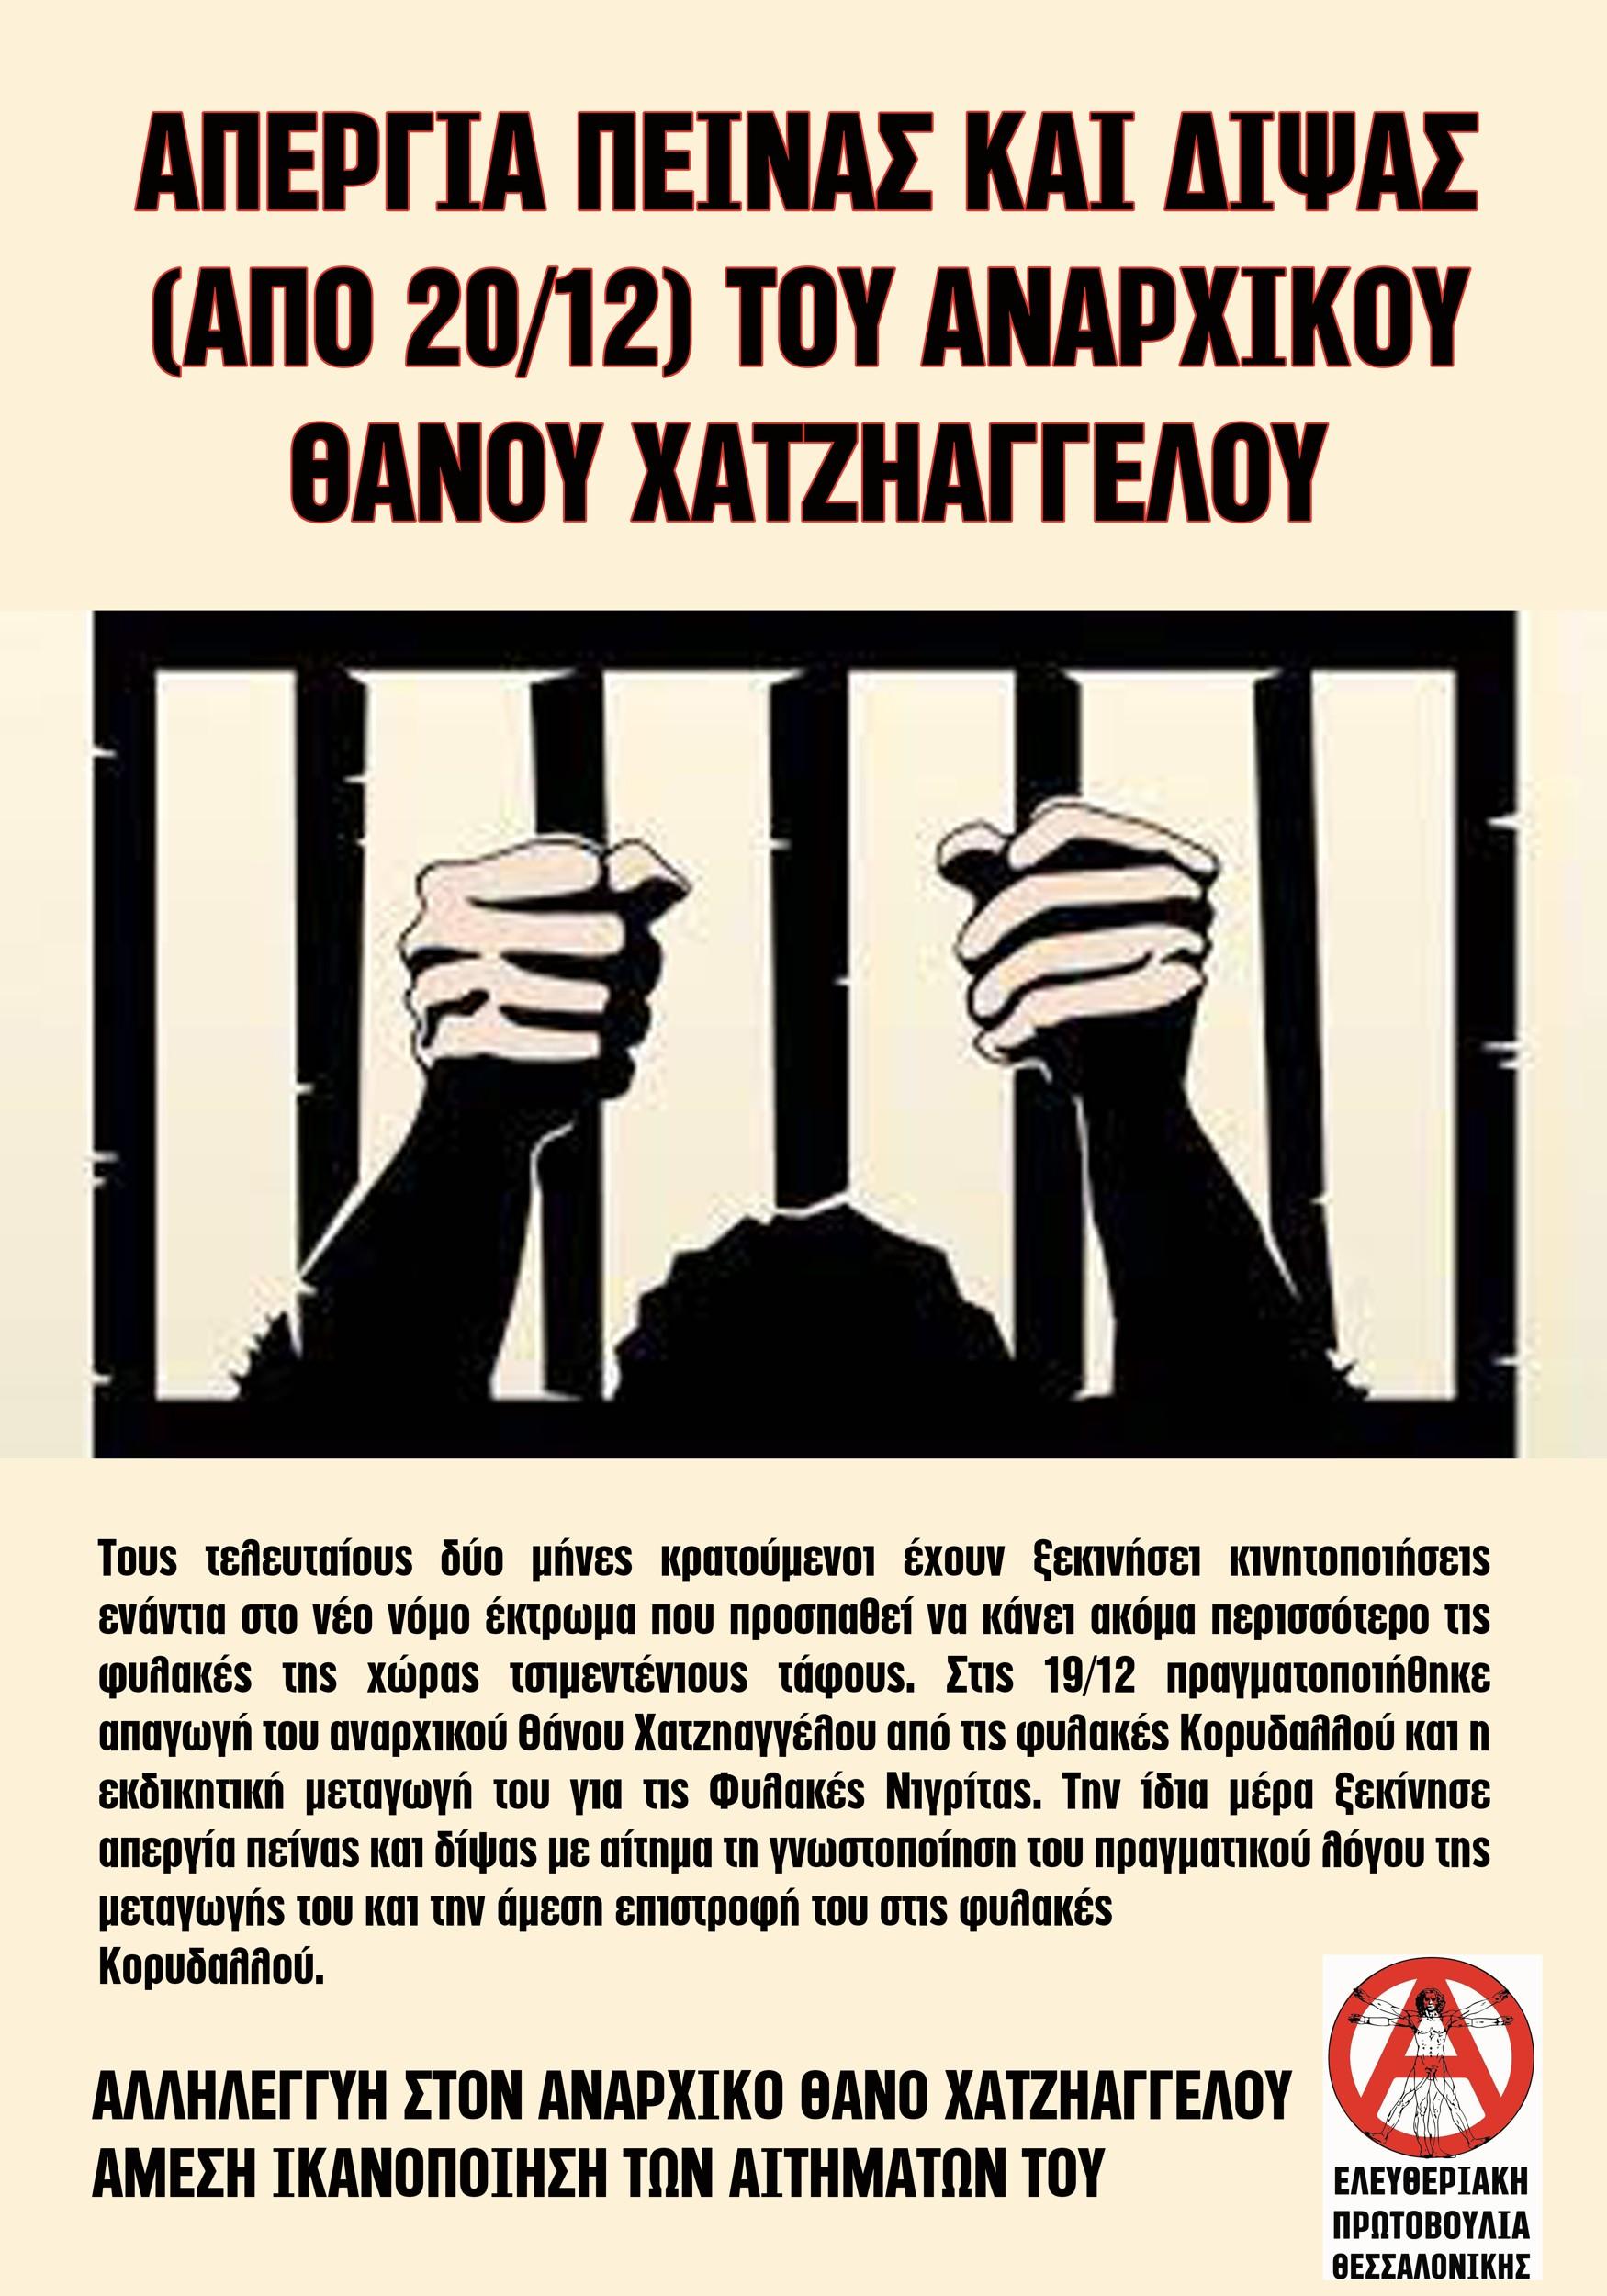 Αλληλεγγύη στον απεργό πείνας & δίψας Θ. Χατζηαγγέλου από την Ελευθεριακή Πρωτοβουλία Θεσσαλονίκης